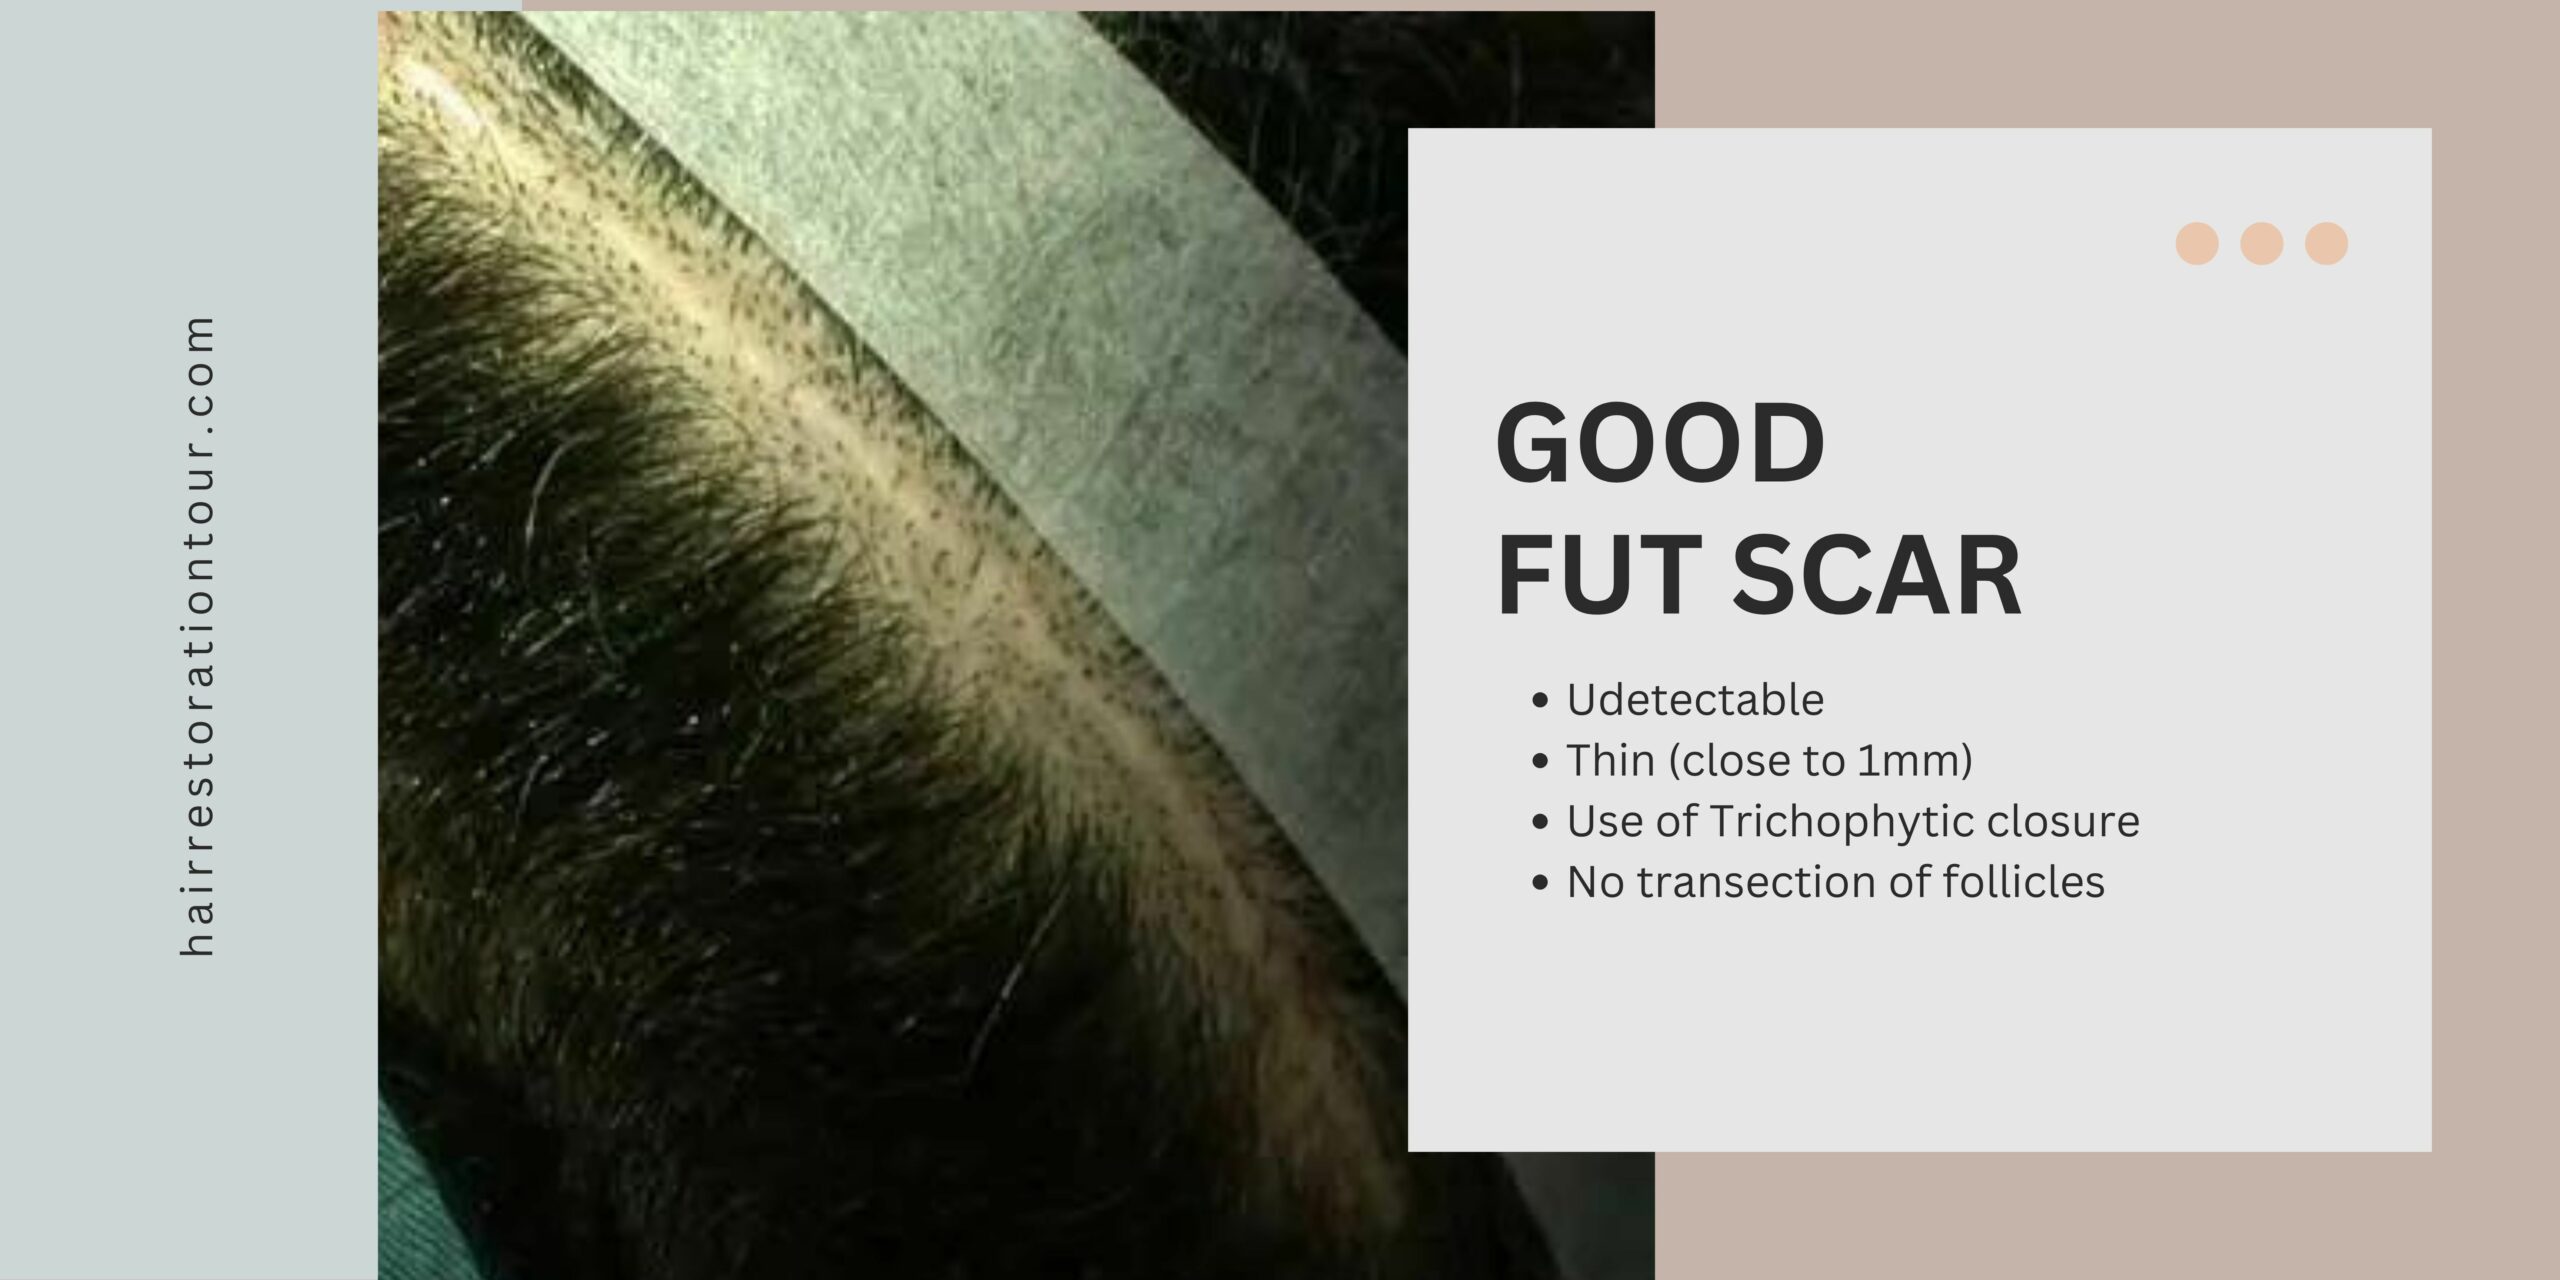 FUT hair transplant scar good